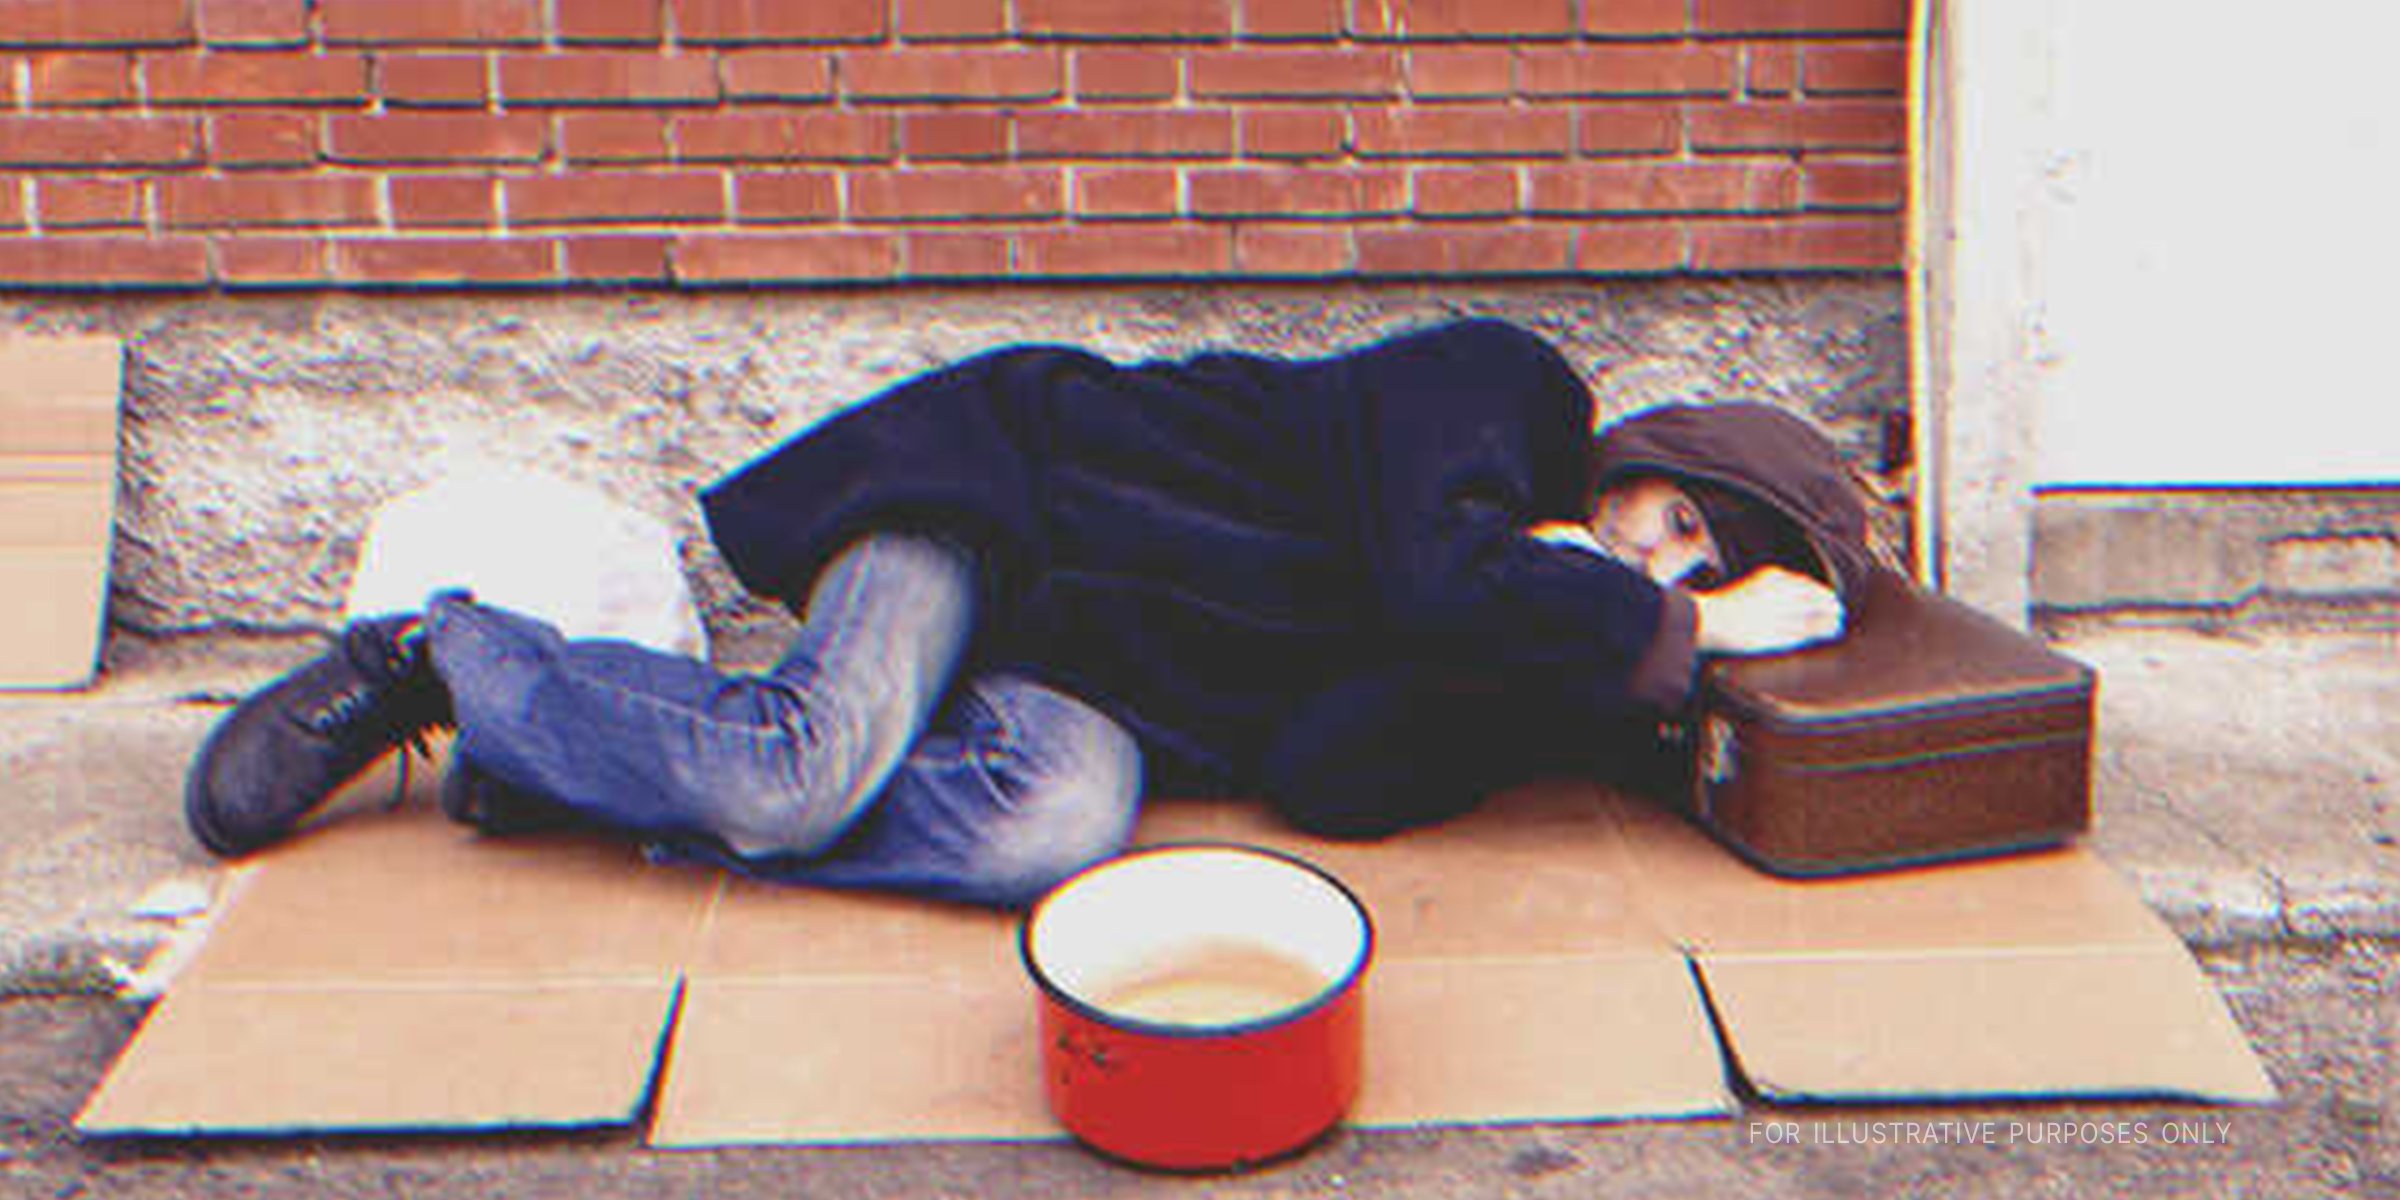 A homeless man sleeping on the street. | Source: Shutterstock